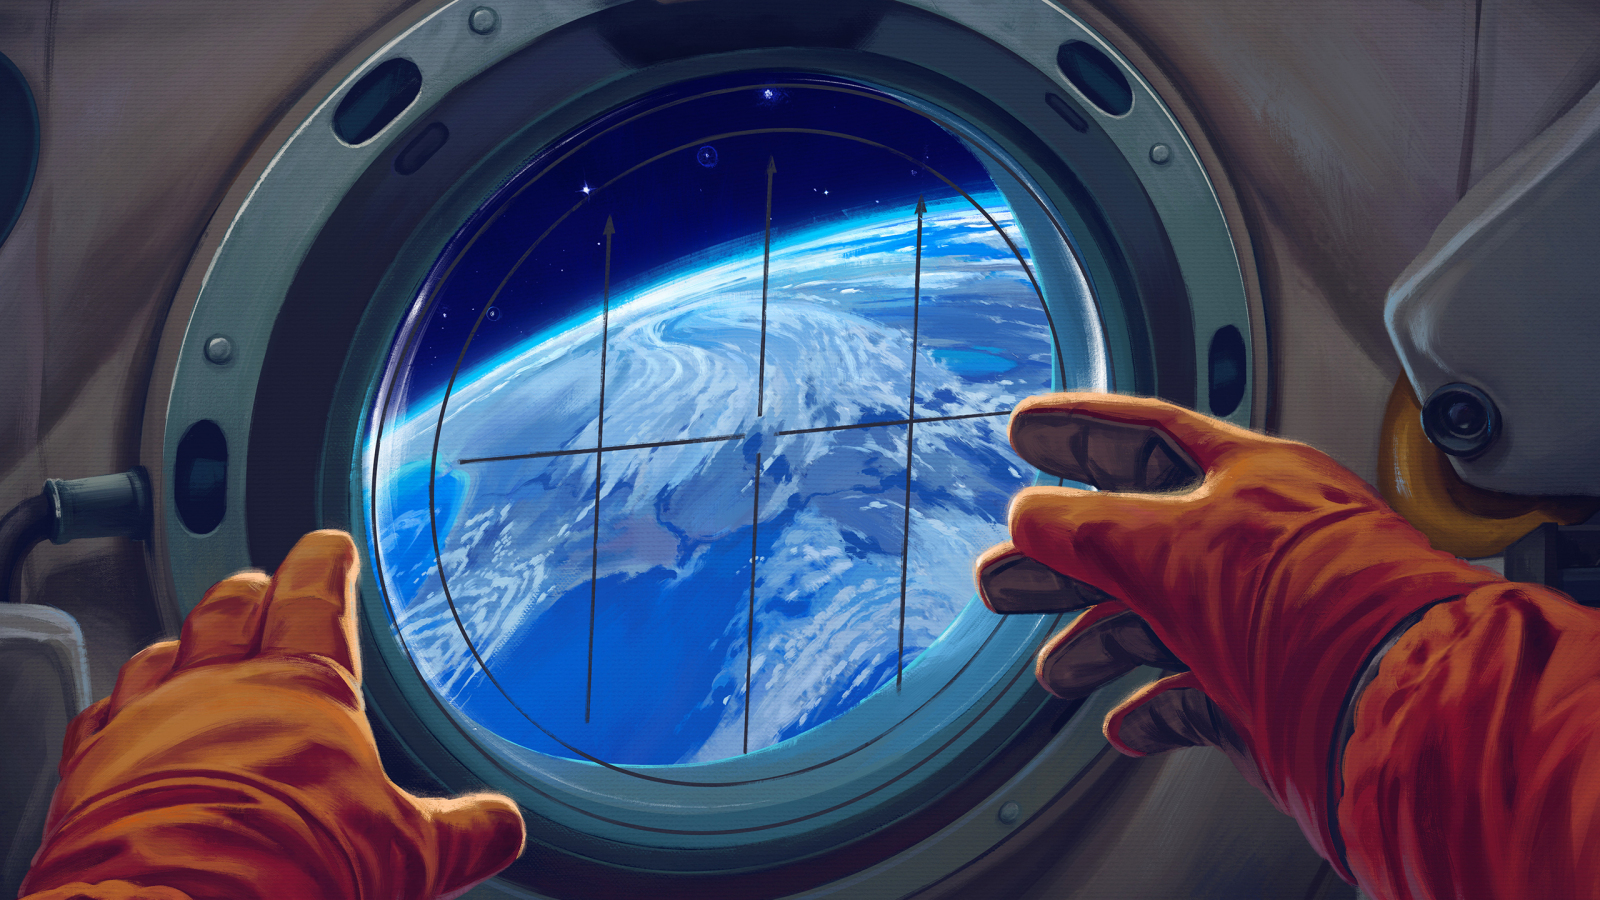 Spacecraft window, astronaut, 1600x900 wallpaper